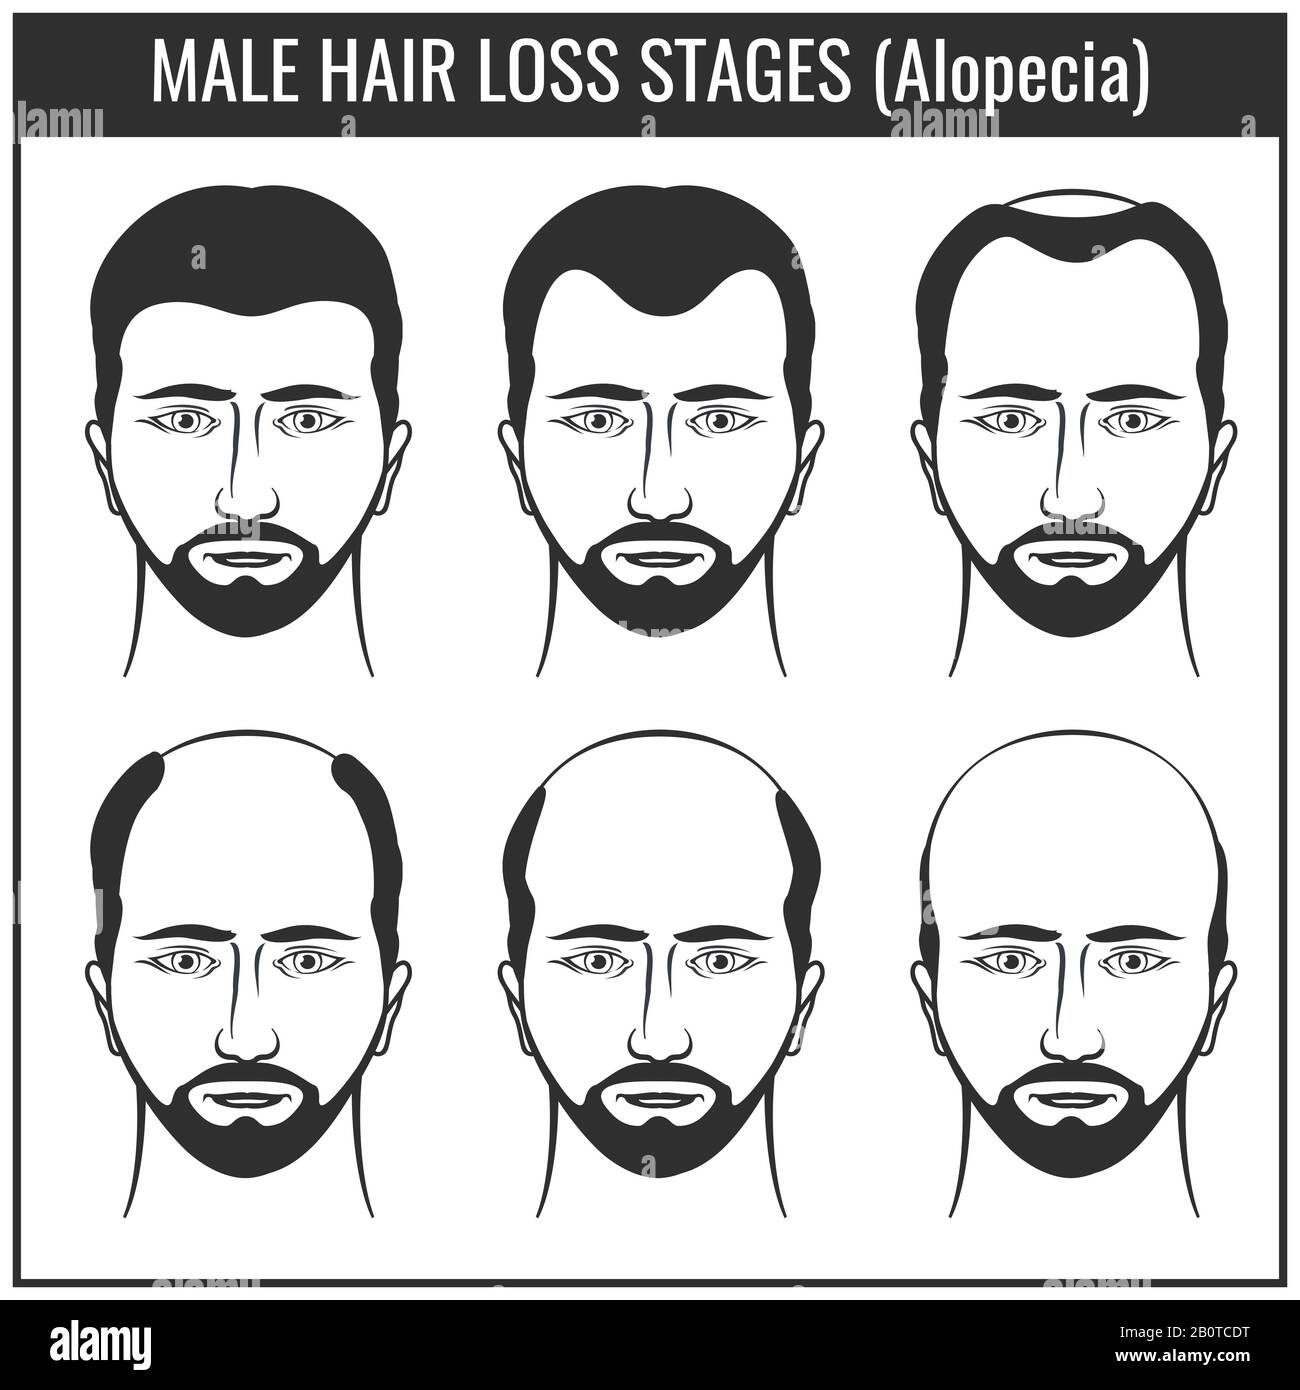 Stades de perte de cheveux et types de calvitie. Graphiques vectoriels de problèmes de poils d'homme. Problème avec les cheveux, illustration de la perte de cheveux Illustration de Vecteur